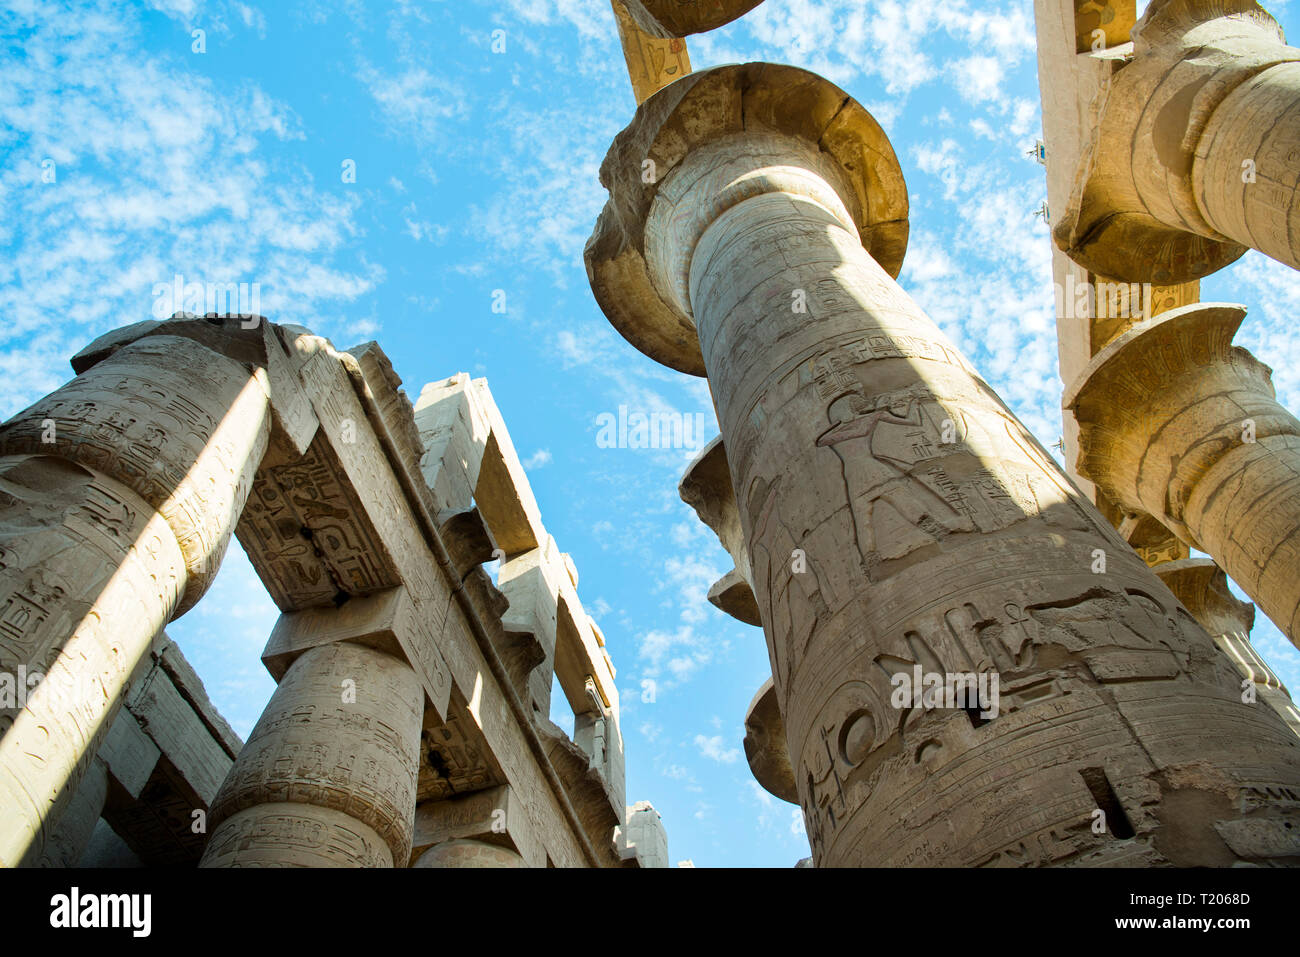 Ägypten, Luxor, Karnak-Tempel, des Hypostyls Säulen im Tempel des Amón-ra Foto de stock